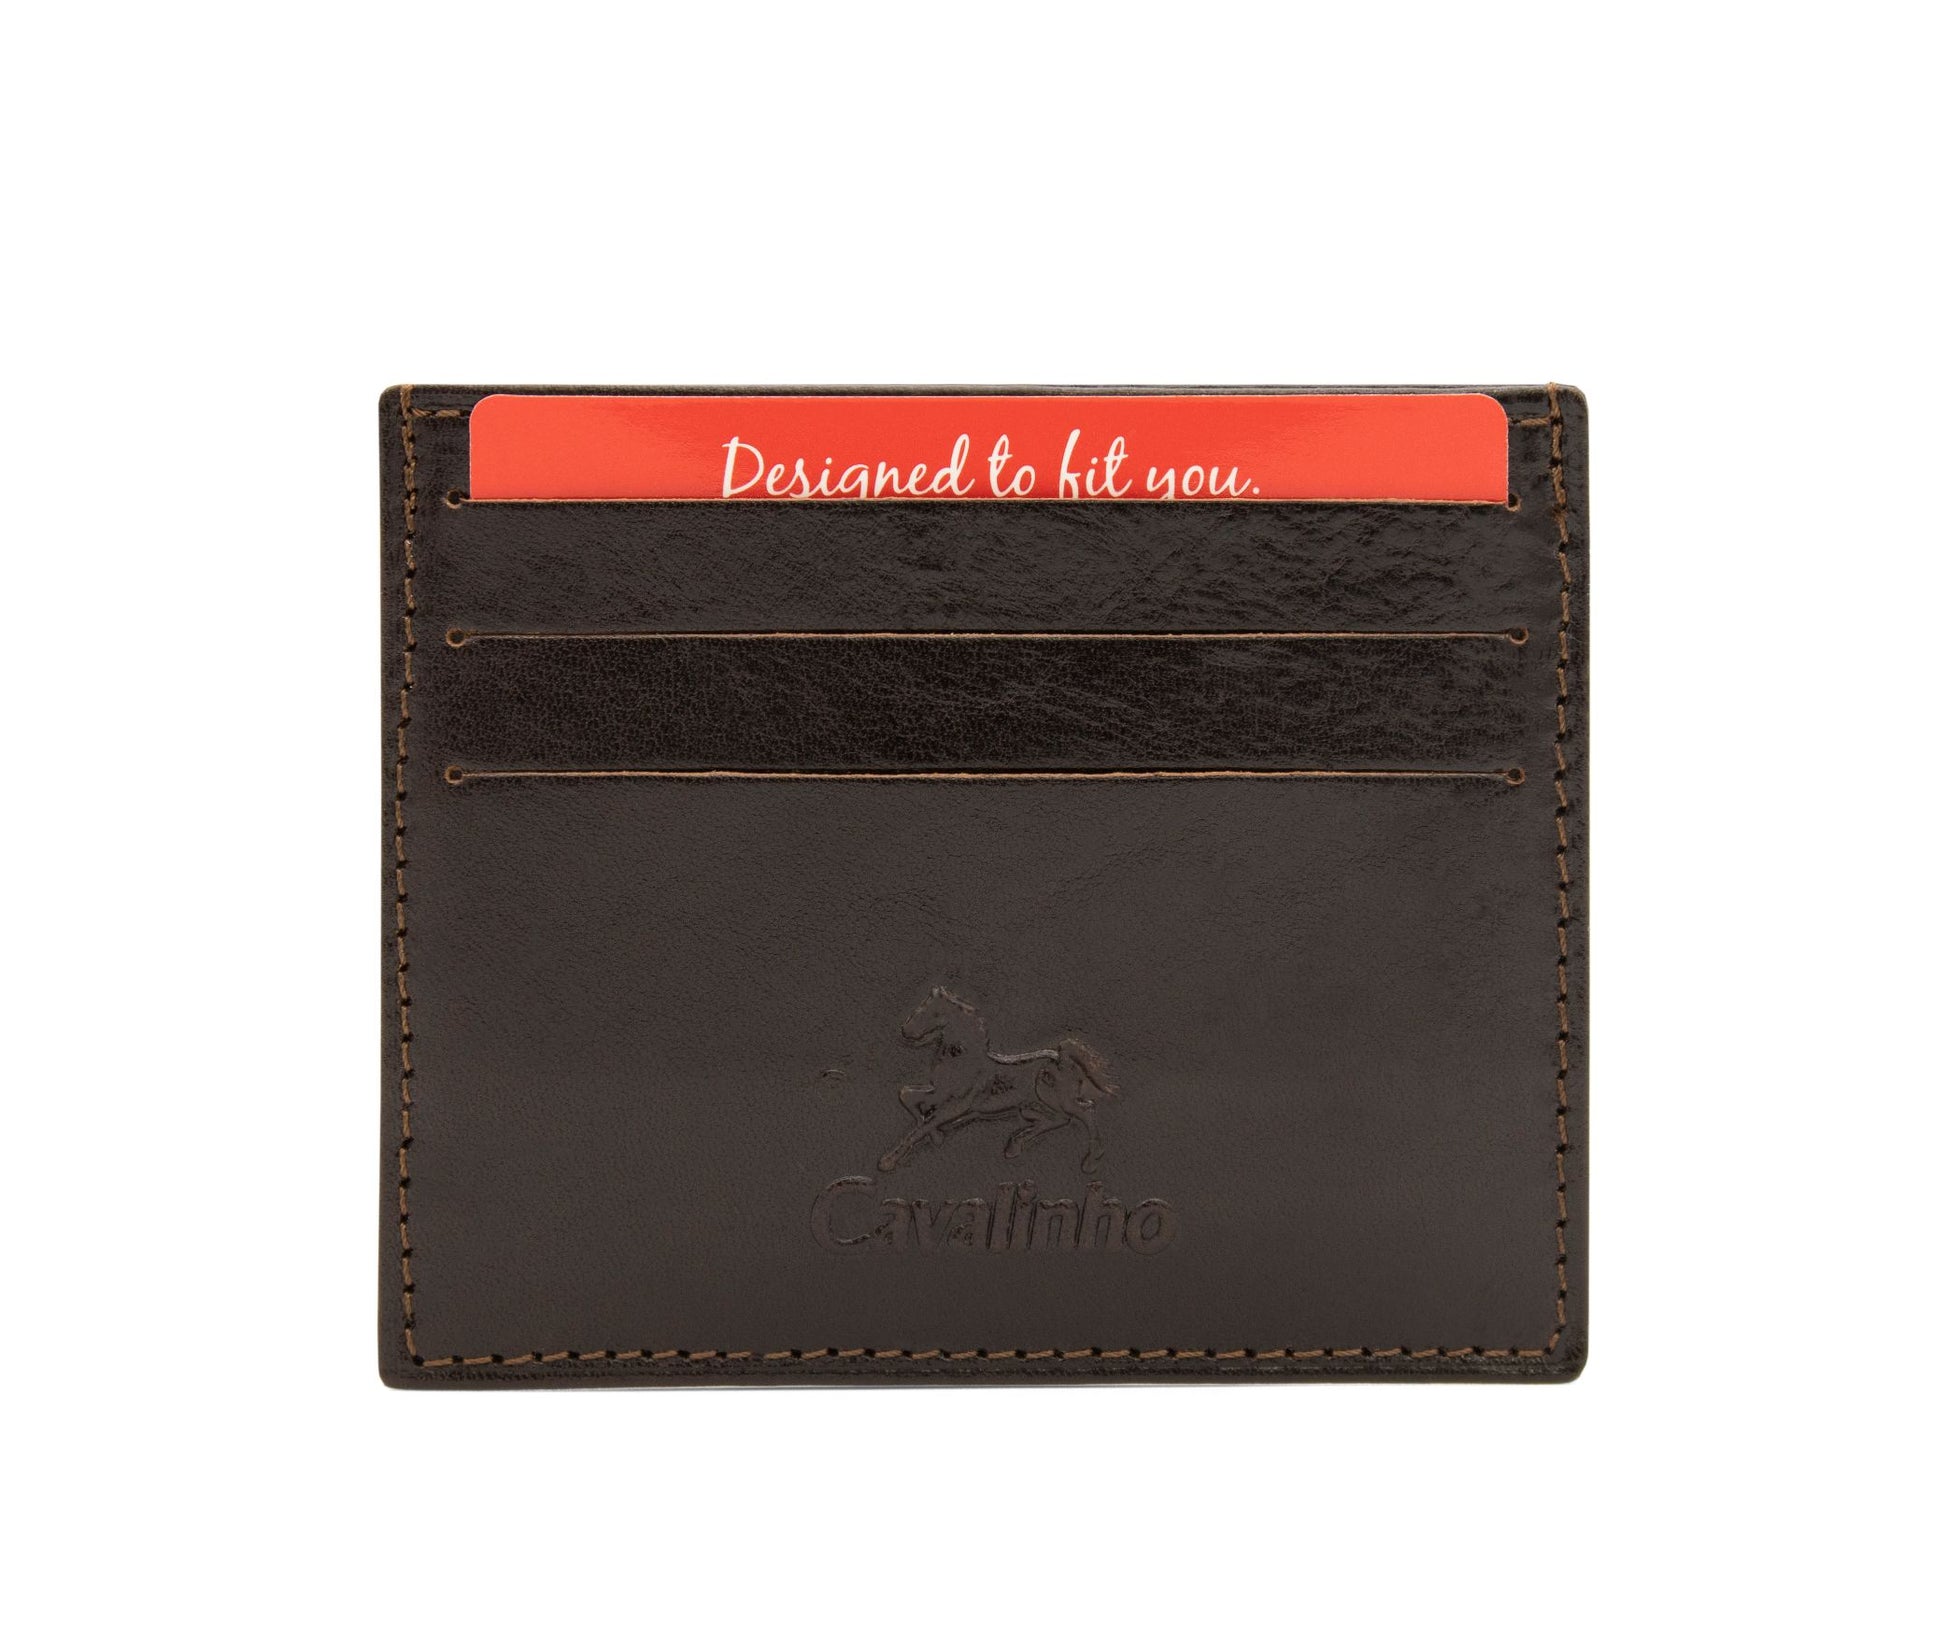 #color_ Brown | Cavalinho Leather Slim Card Holder Wallet - Brown - 28610560.02_1